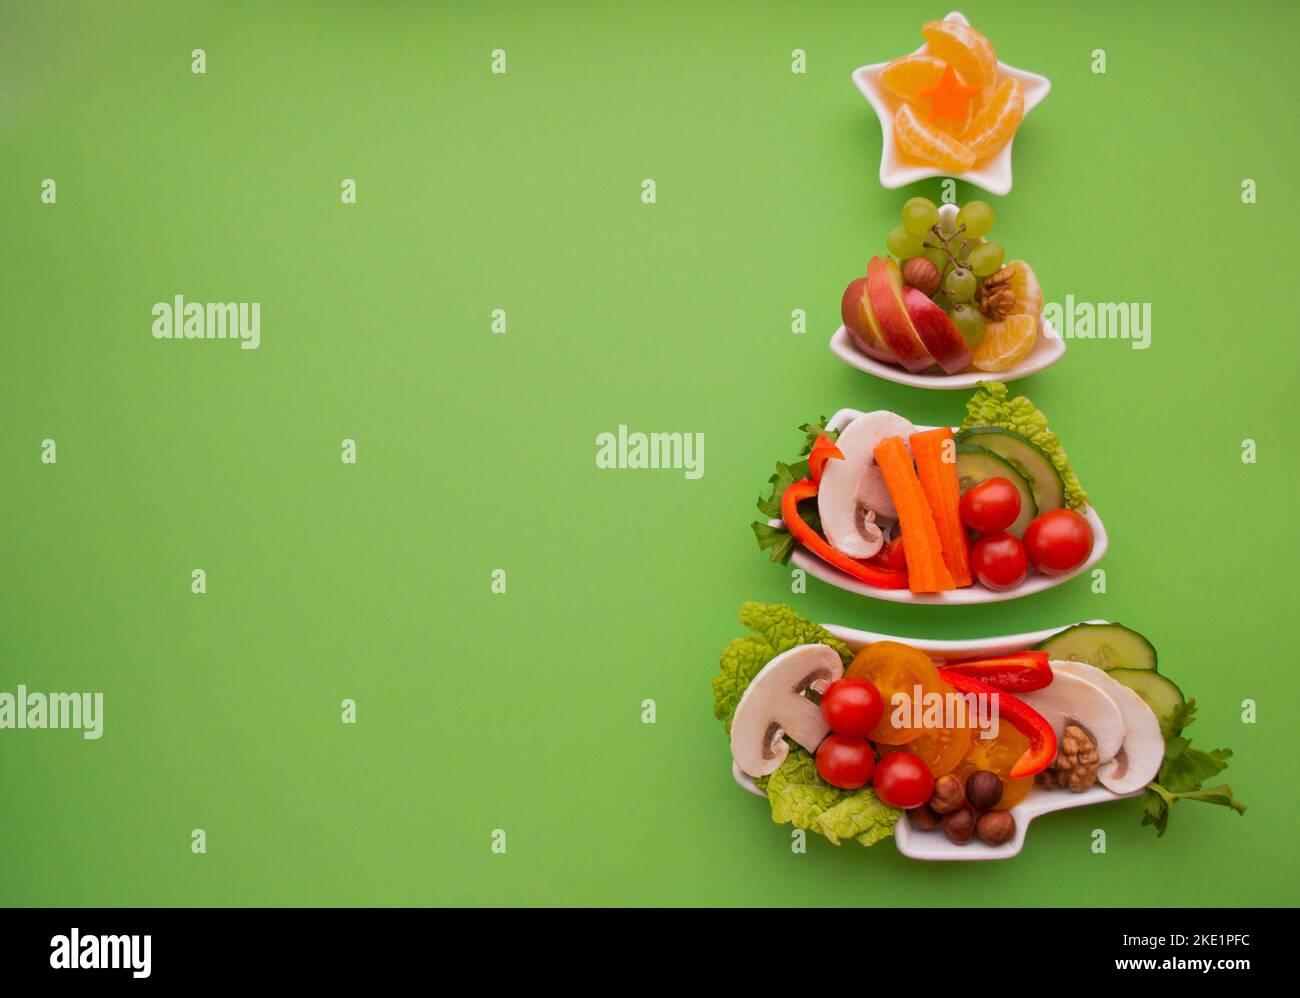 Piatto in forma di albero di Natale con verdure, frutta, funghi e bacche.sfondo verde. Il concetto di prelibatezze vegetariane per gli holida Foto Stock